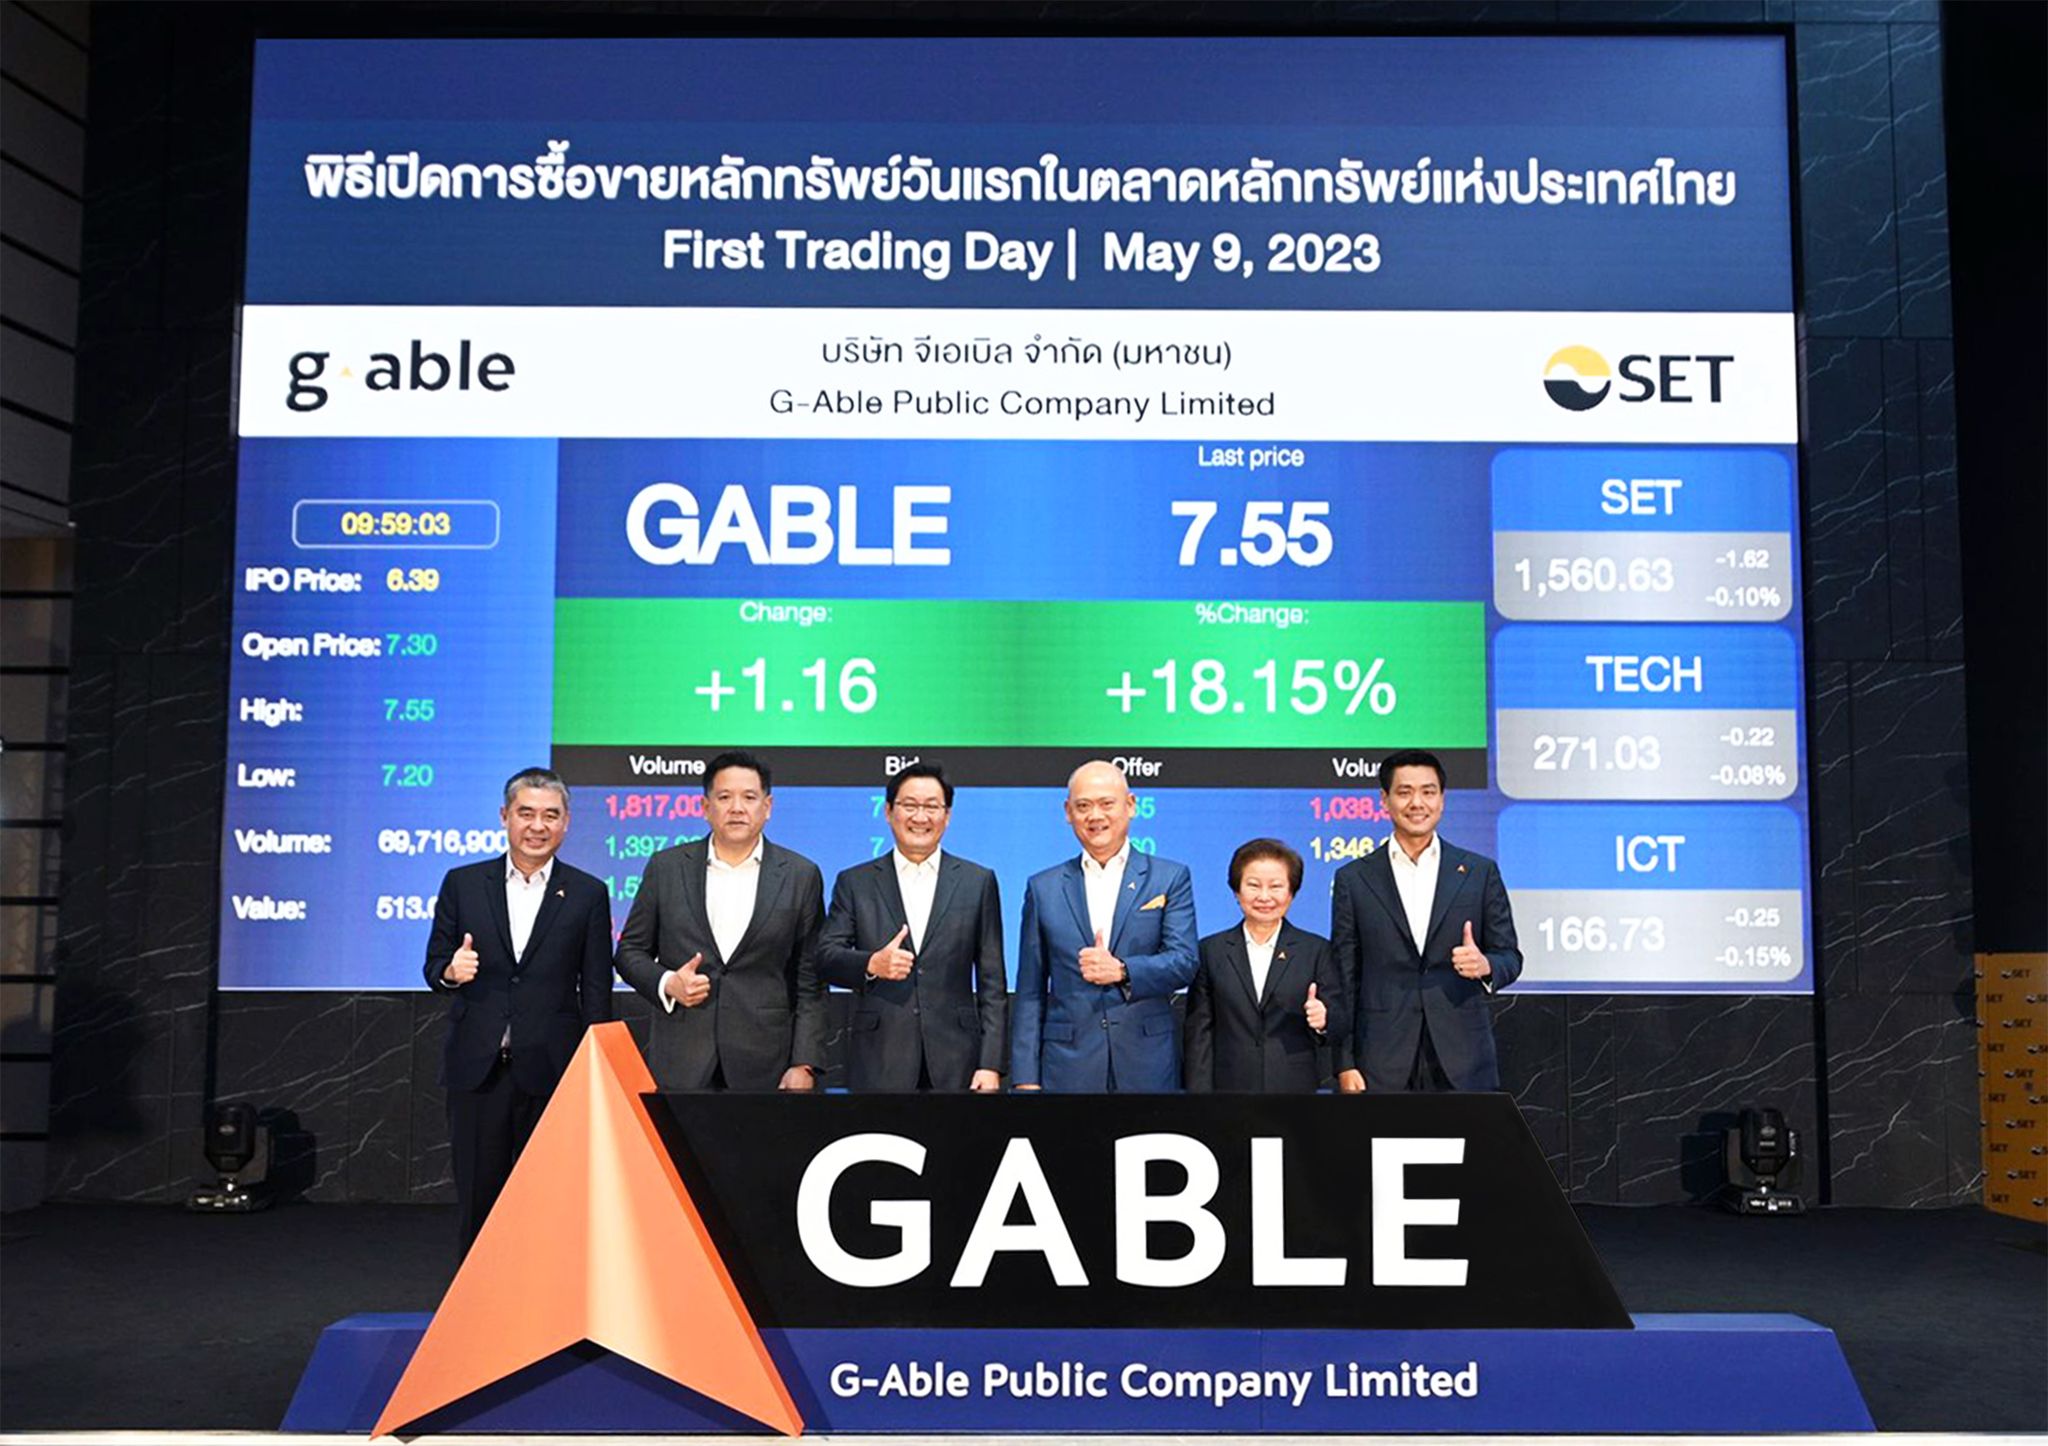 GABLE ประสบความสำเร็จ เข้าซื้อขายวันแรกในตลาดหลักทรัพย์ฯ  ราคาเปิดพุ่งเหนือราคาจอง 14.24%  